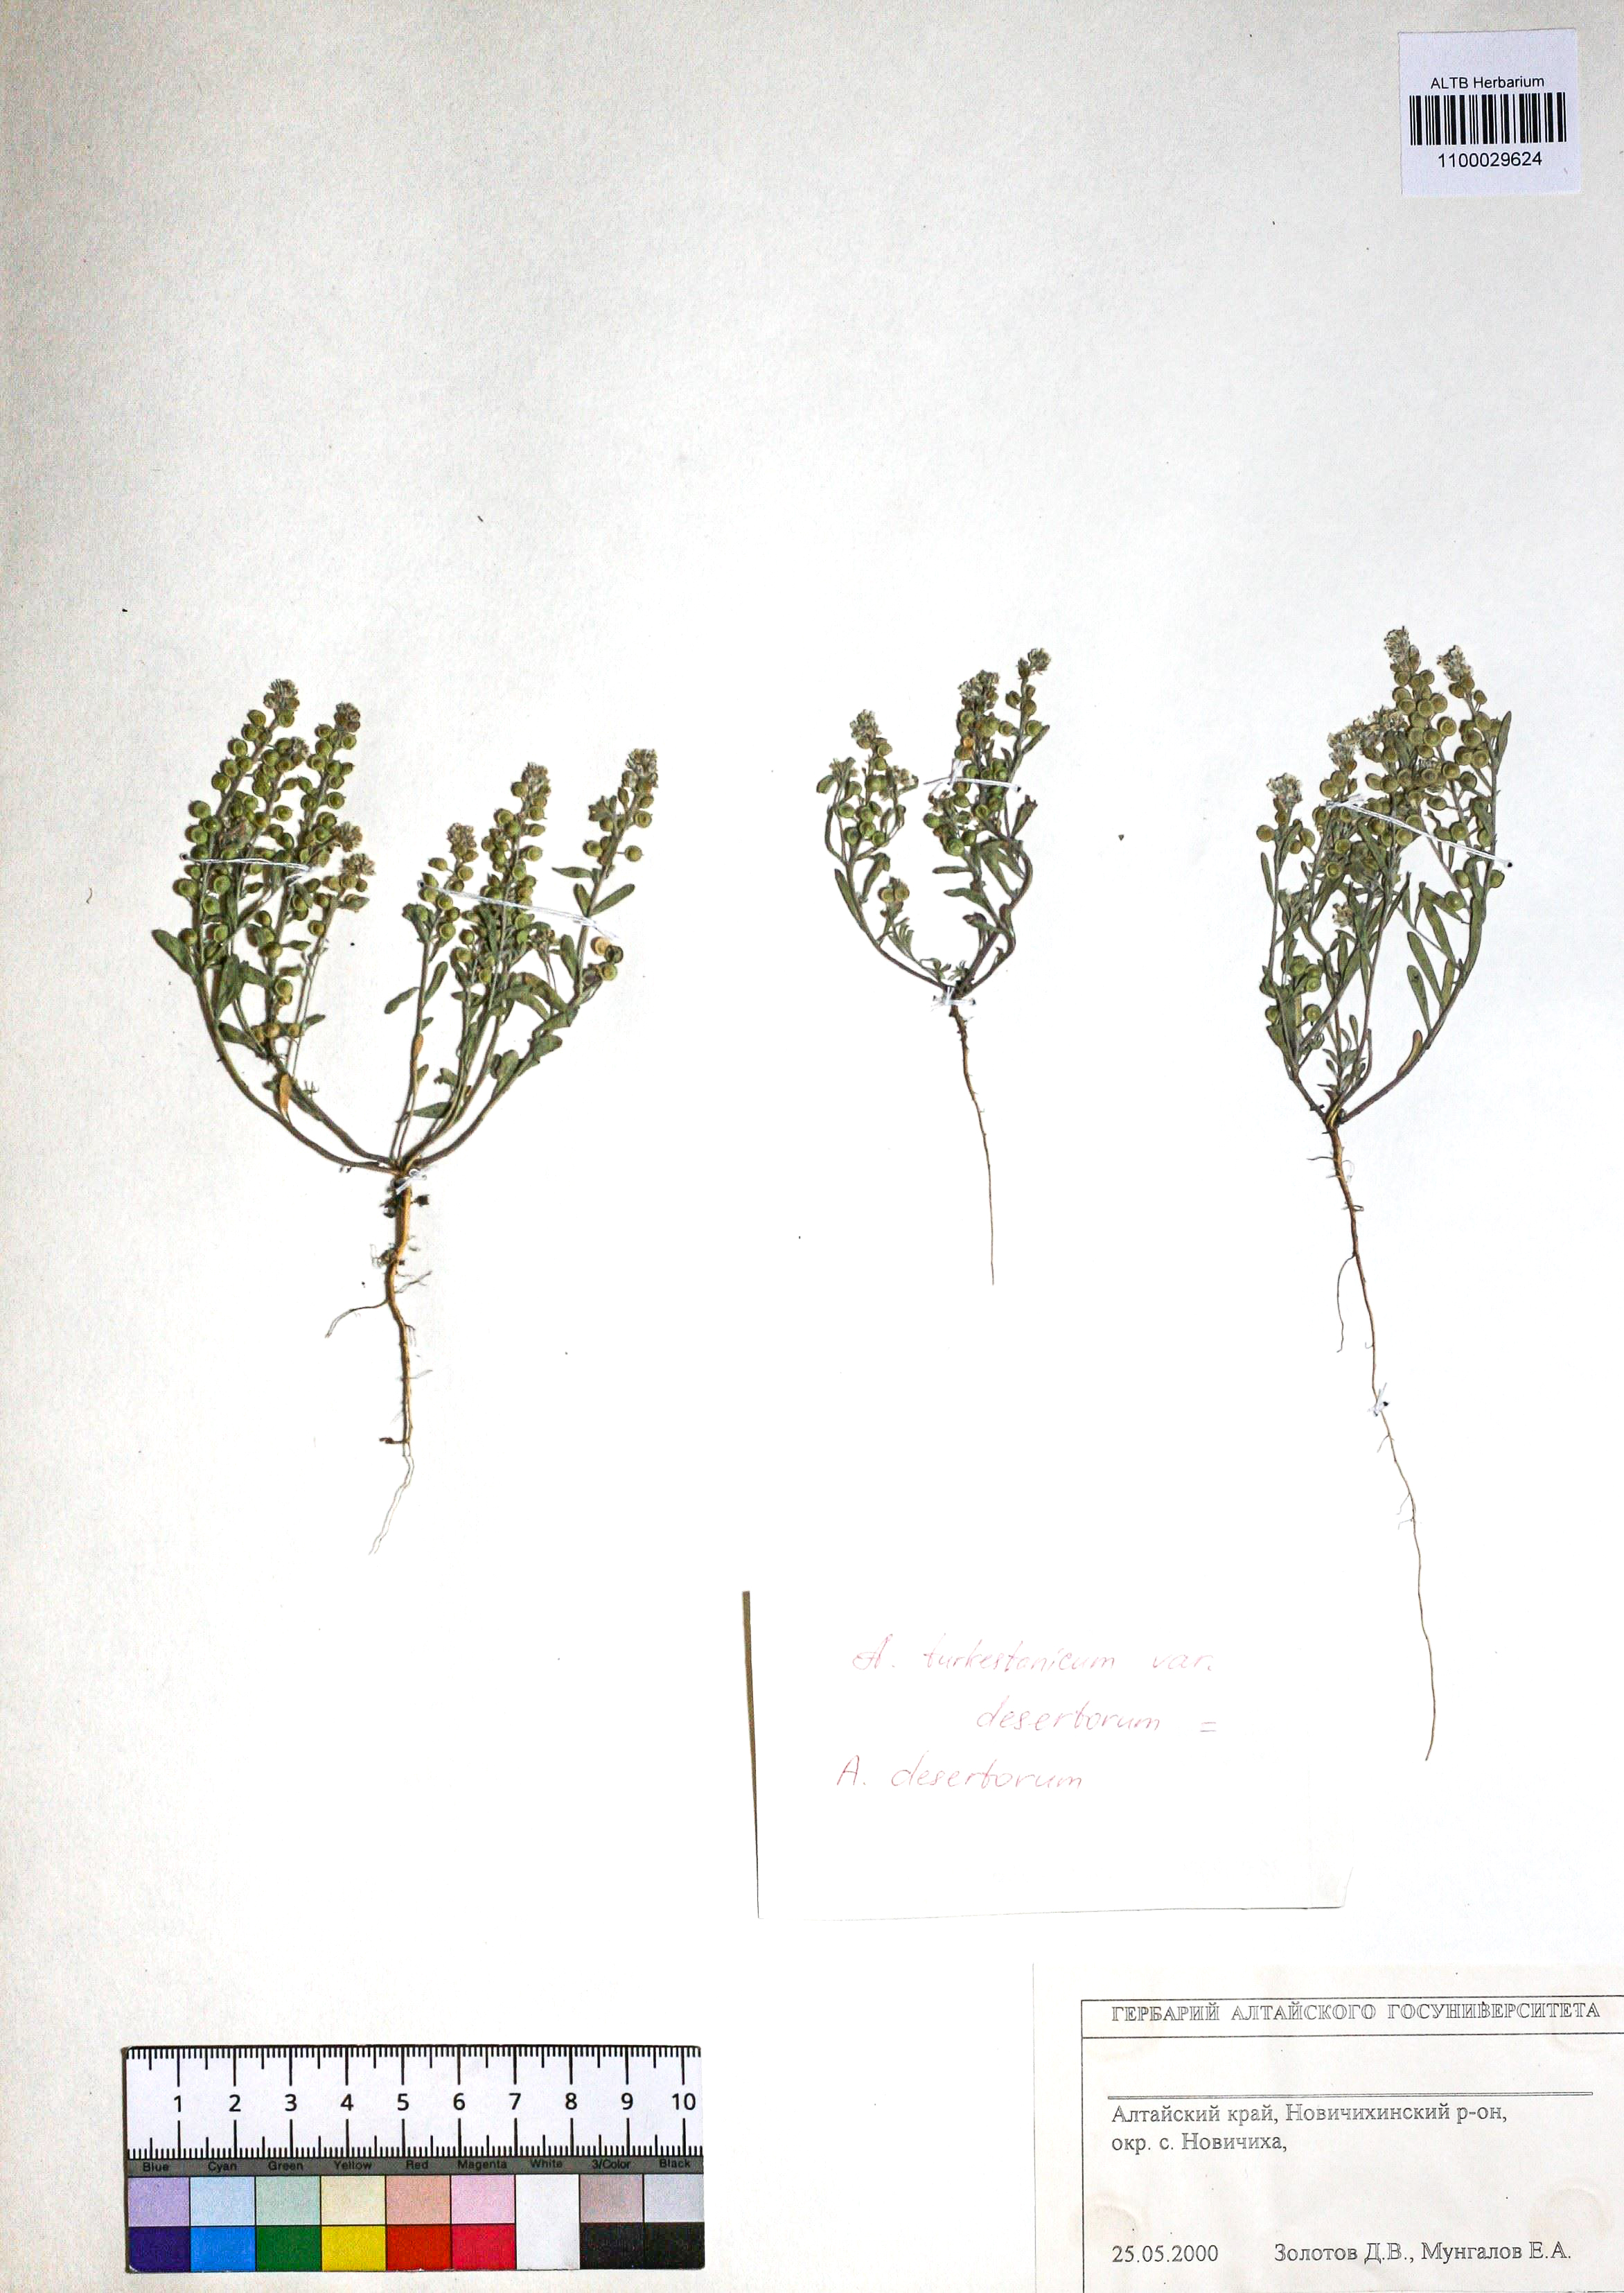 Alyssum turkestanicum Regel & Schmalh.